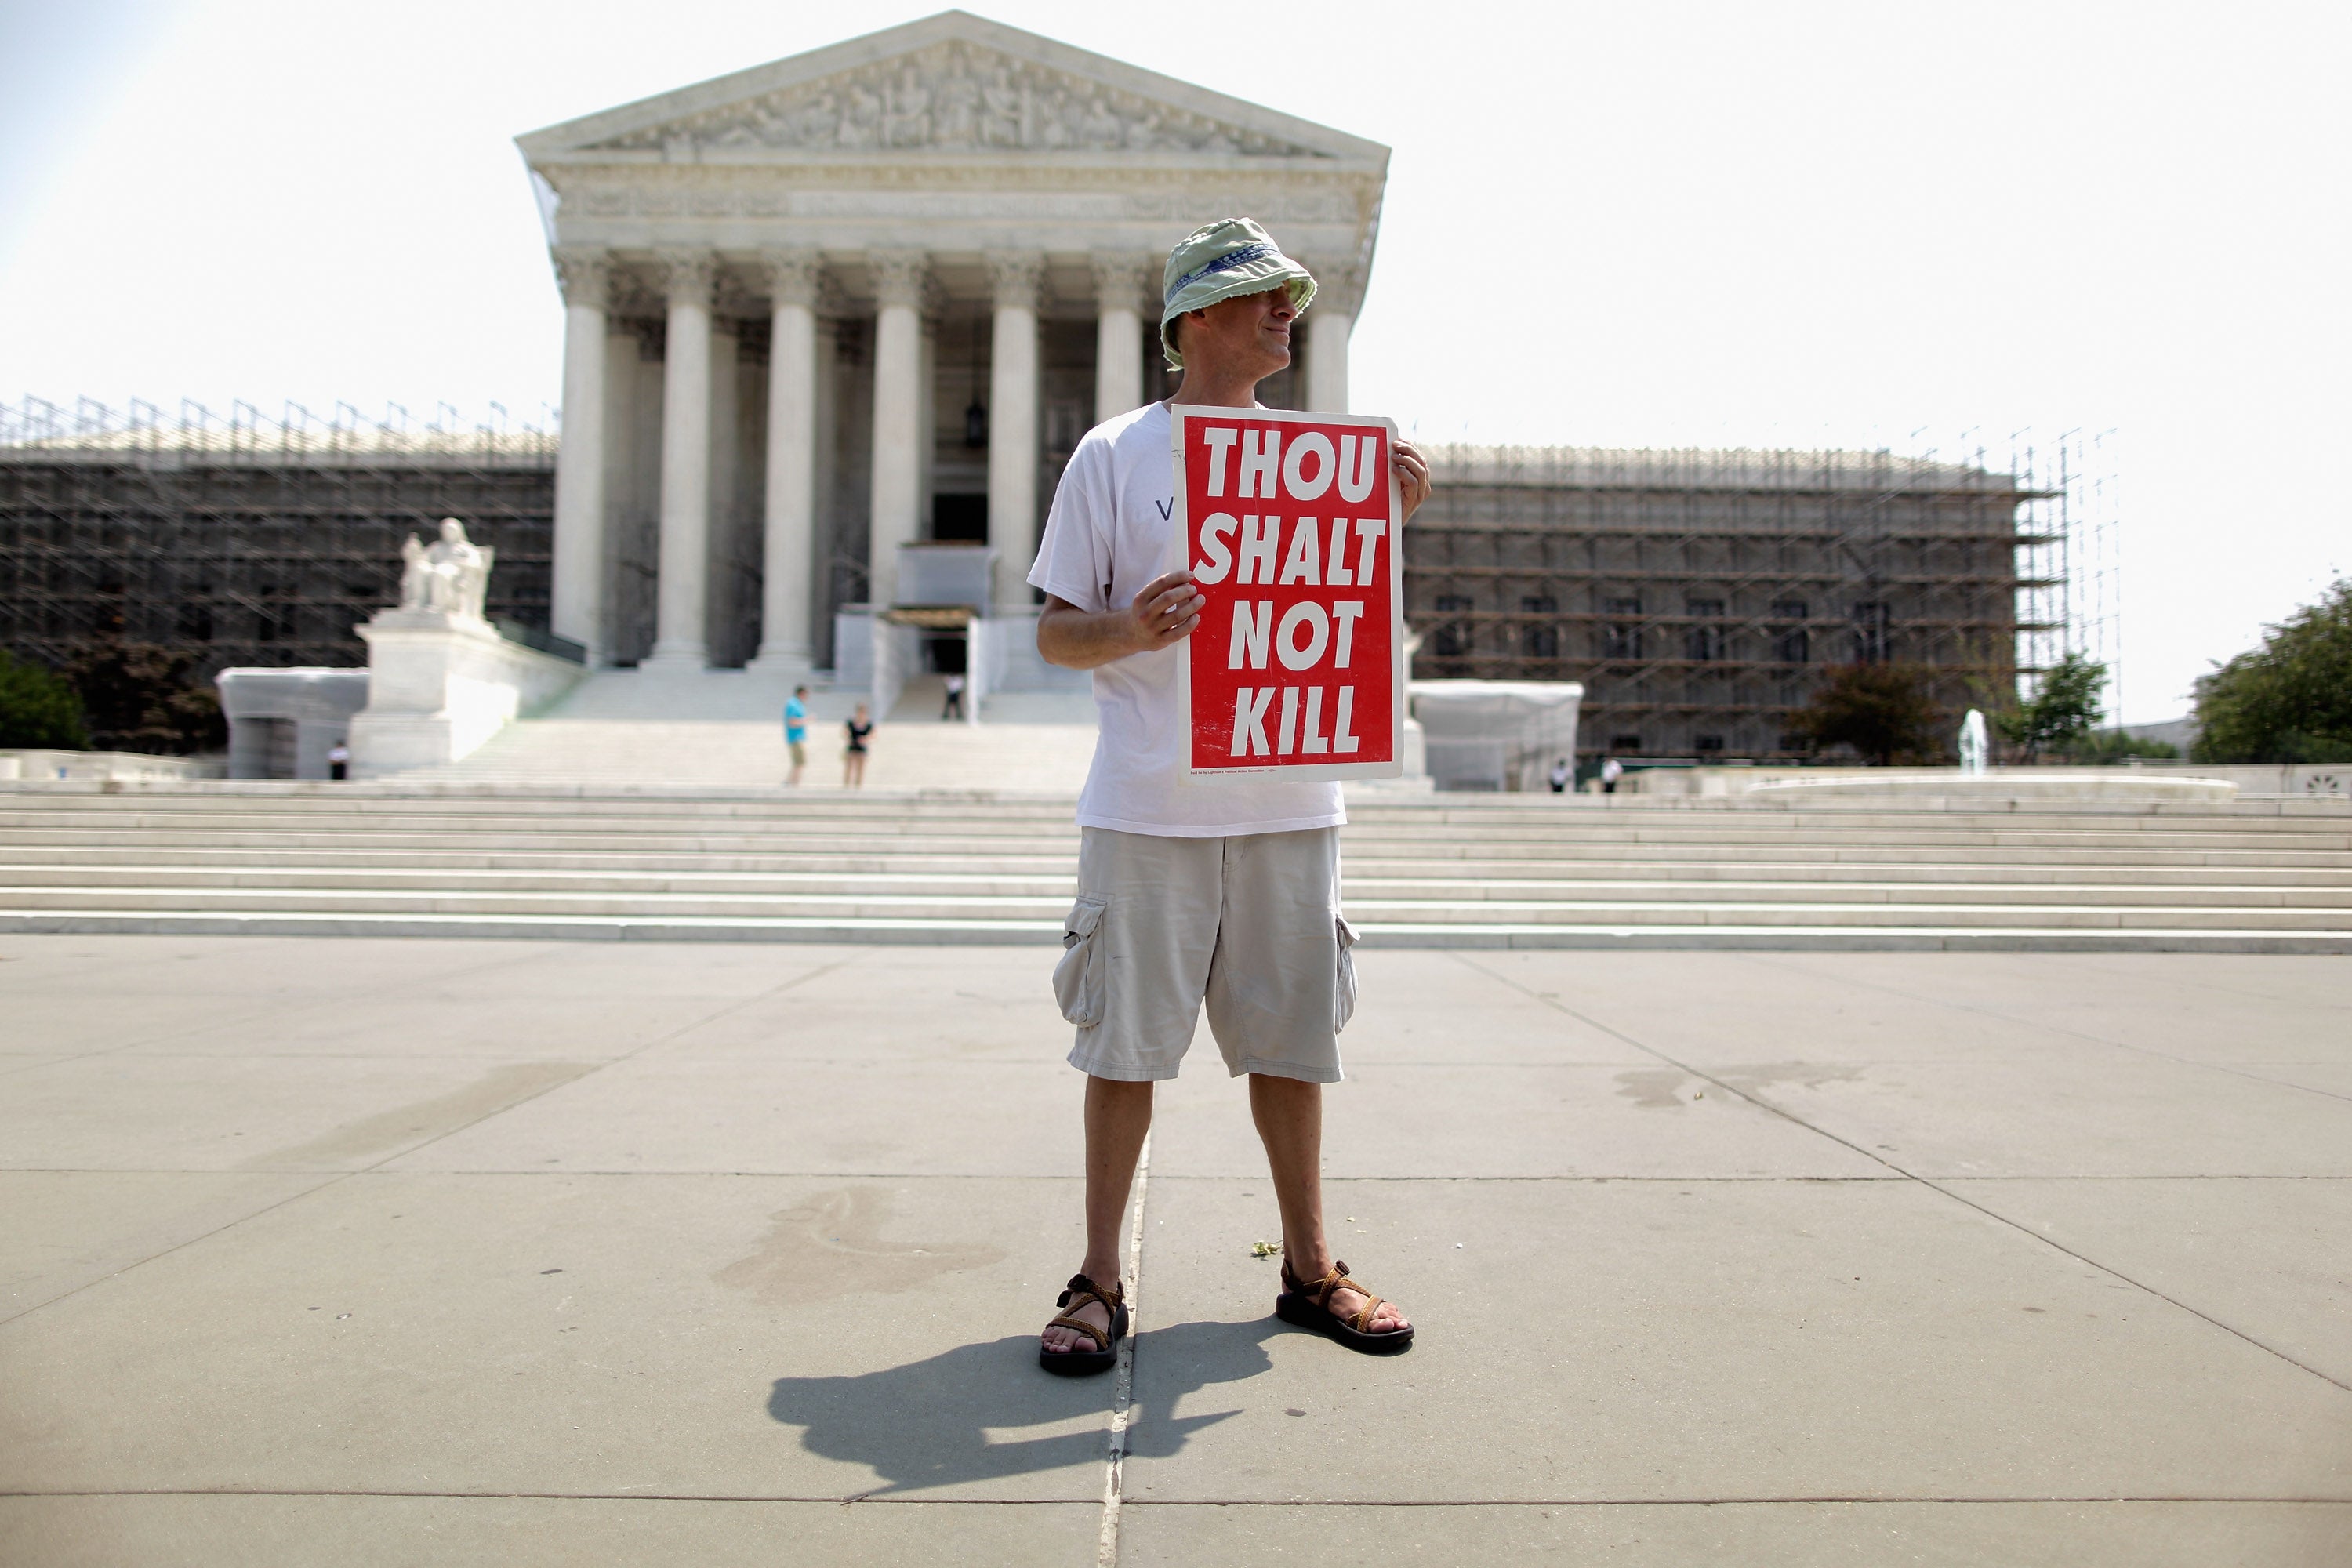 A death penalty protestor in Virginia